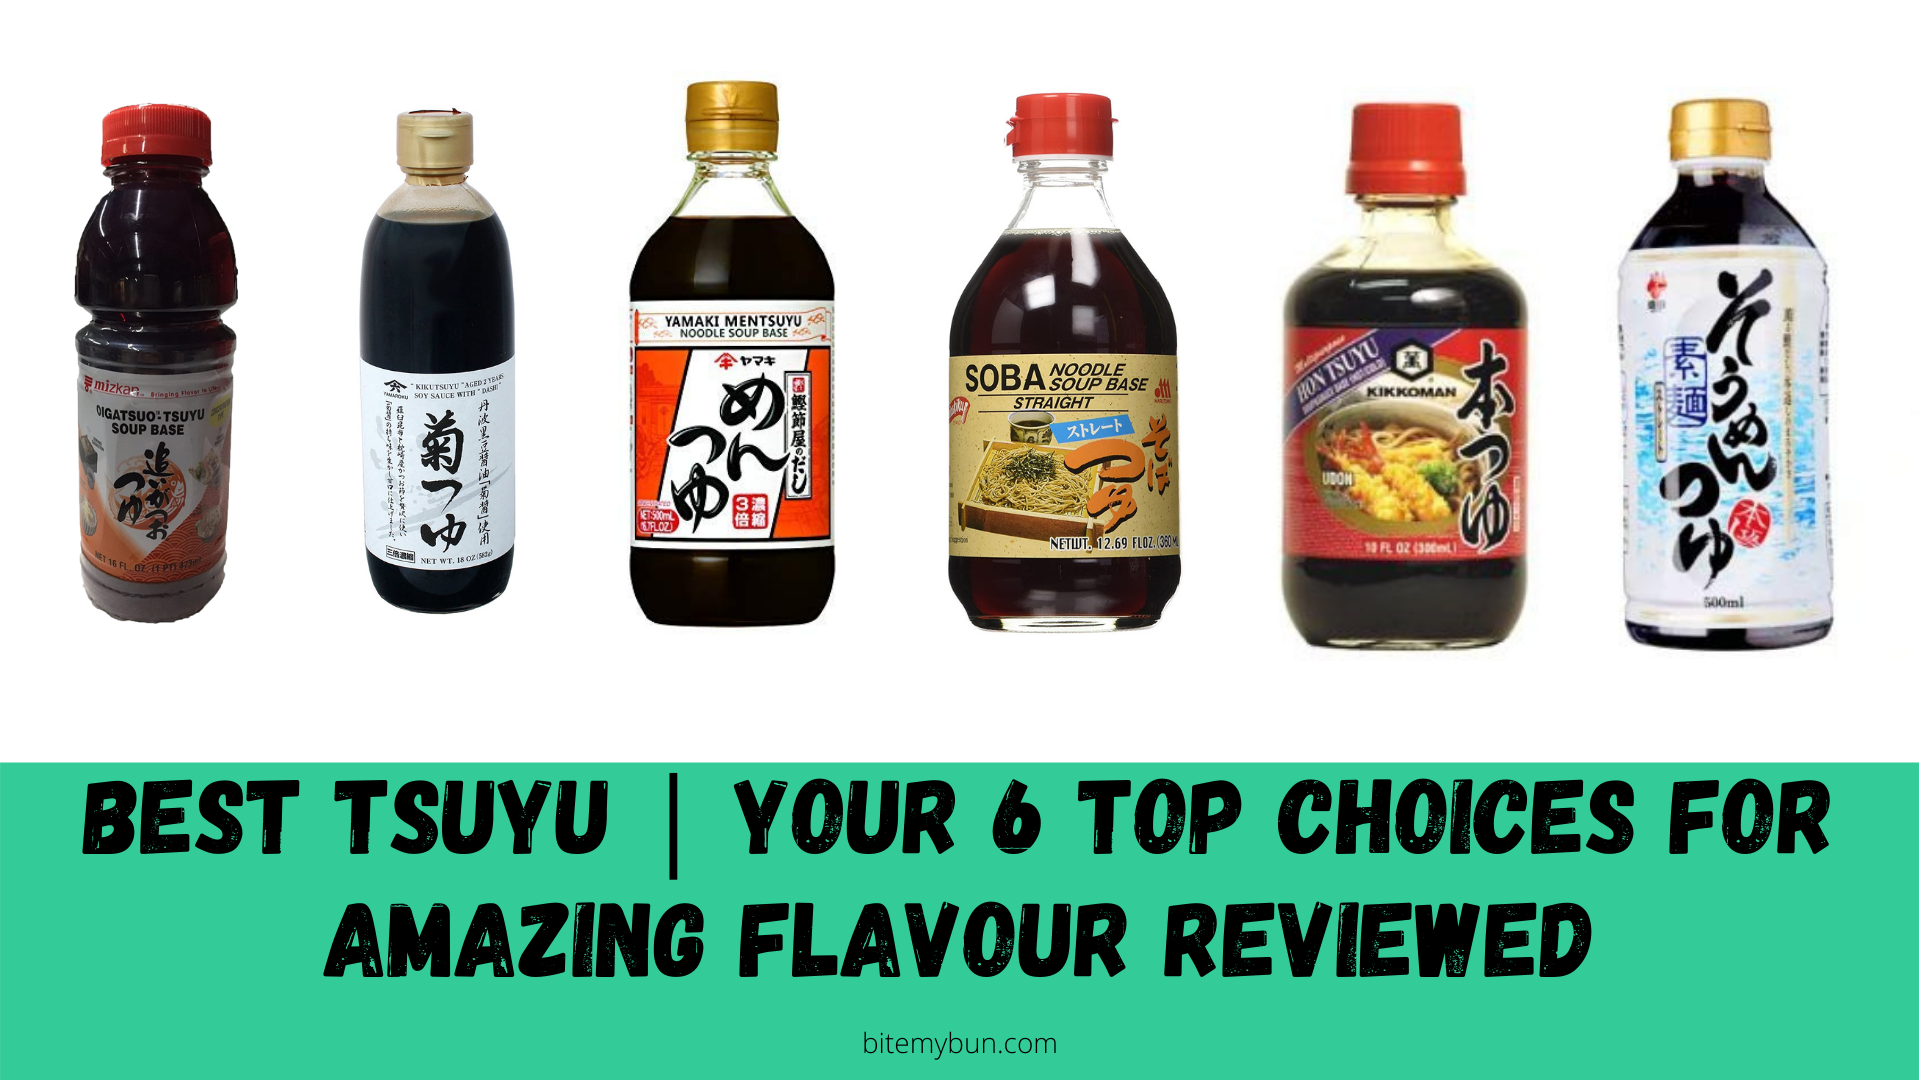 بهترین tsuyu | 6 انتخاب برتر شما برای طعم شگفت انگیز بررسی شده است